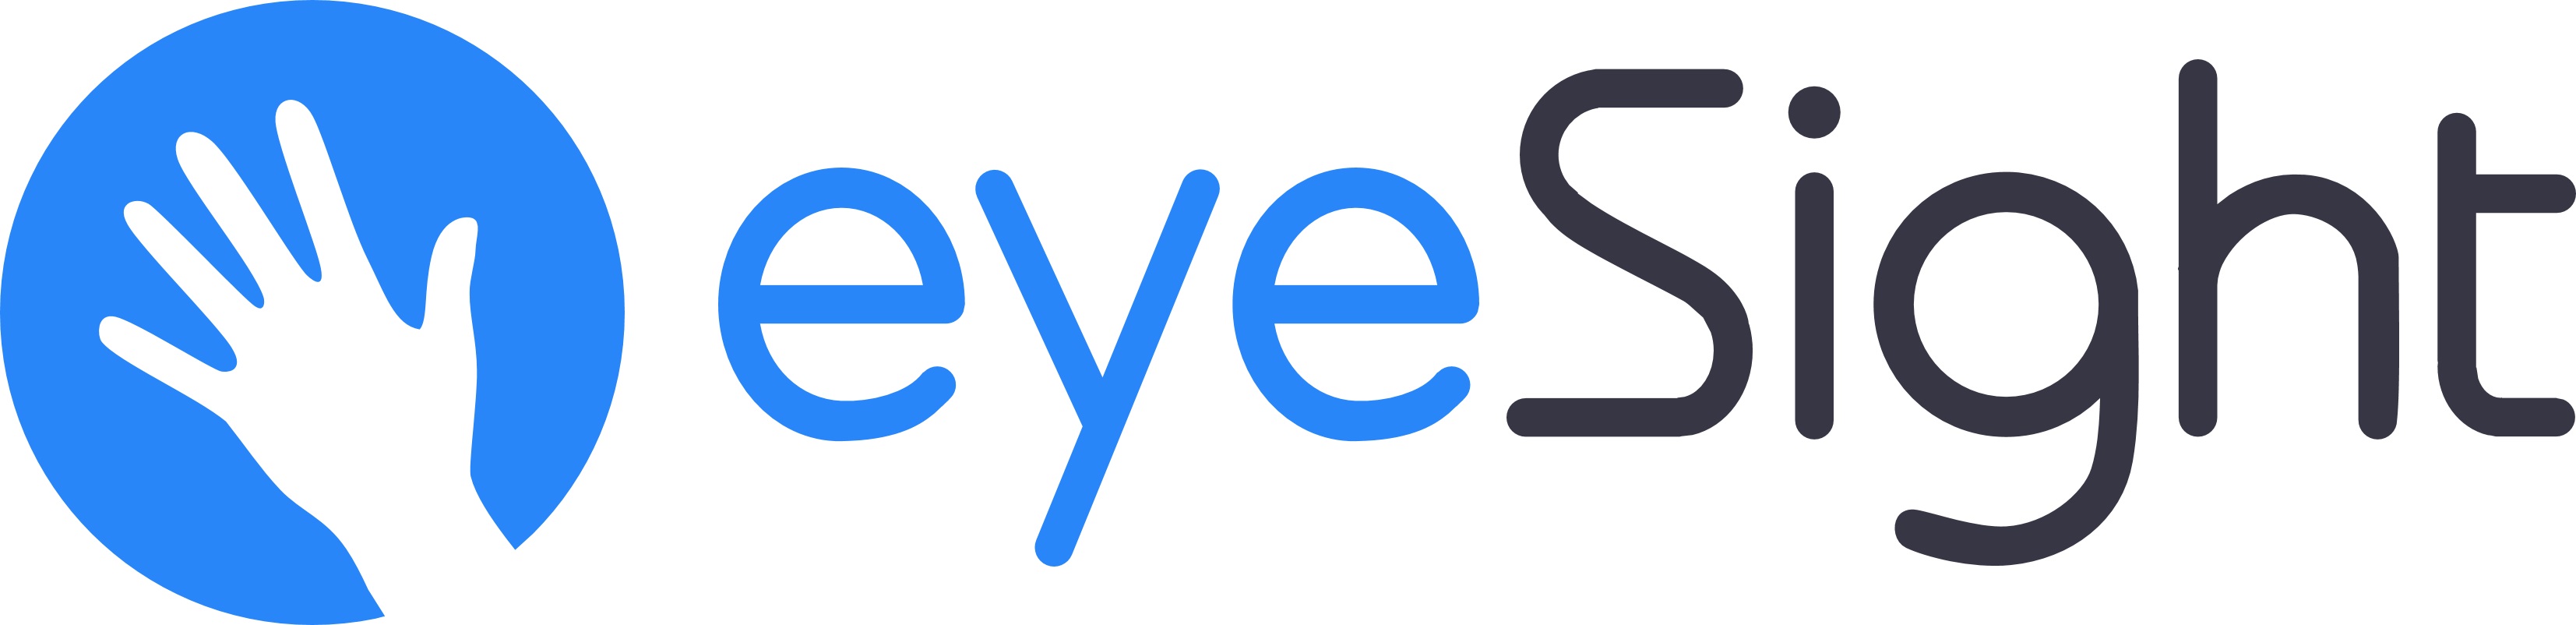 eyeSight Joins the S